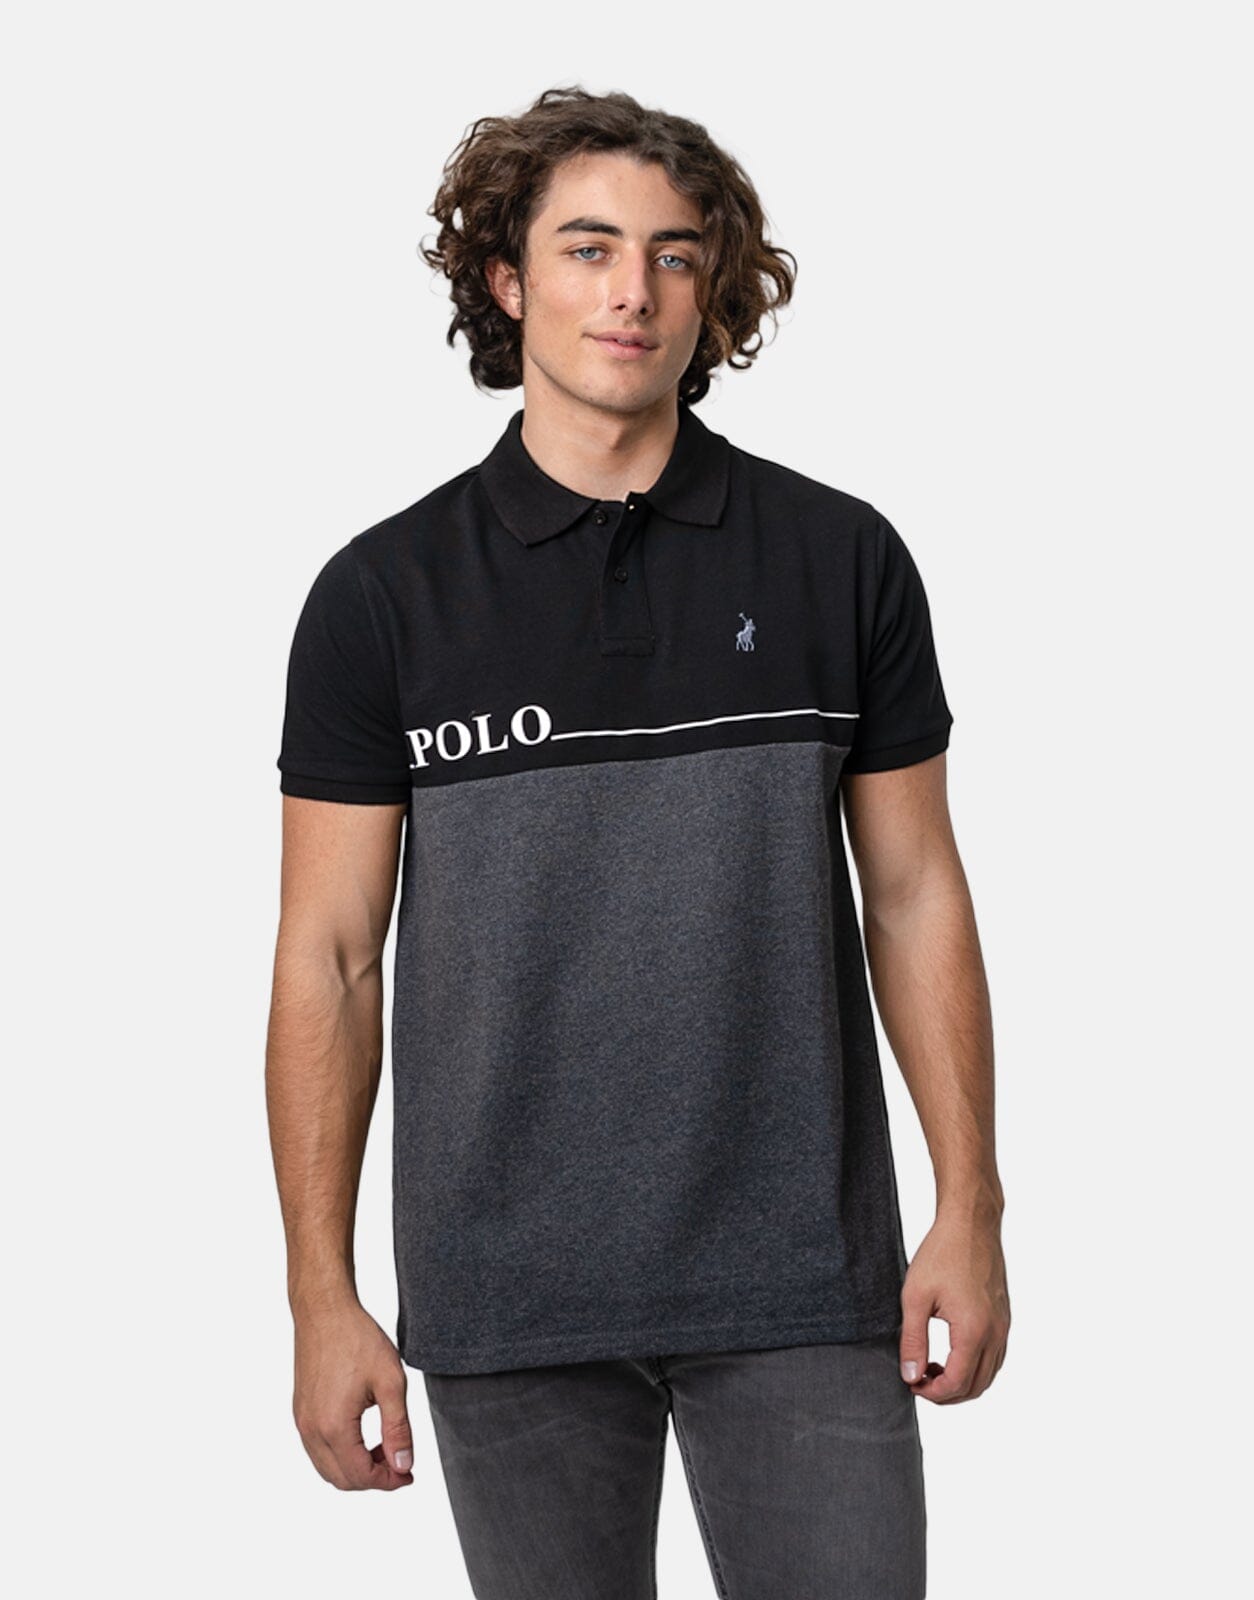 Polo Logo Printed Polo Shirt - Subwear